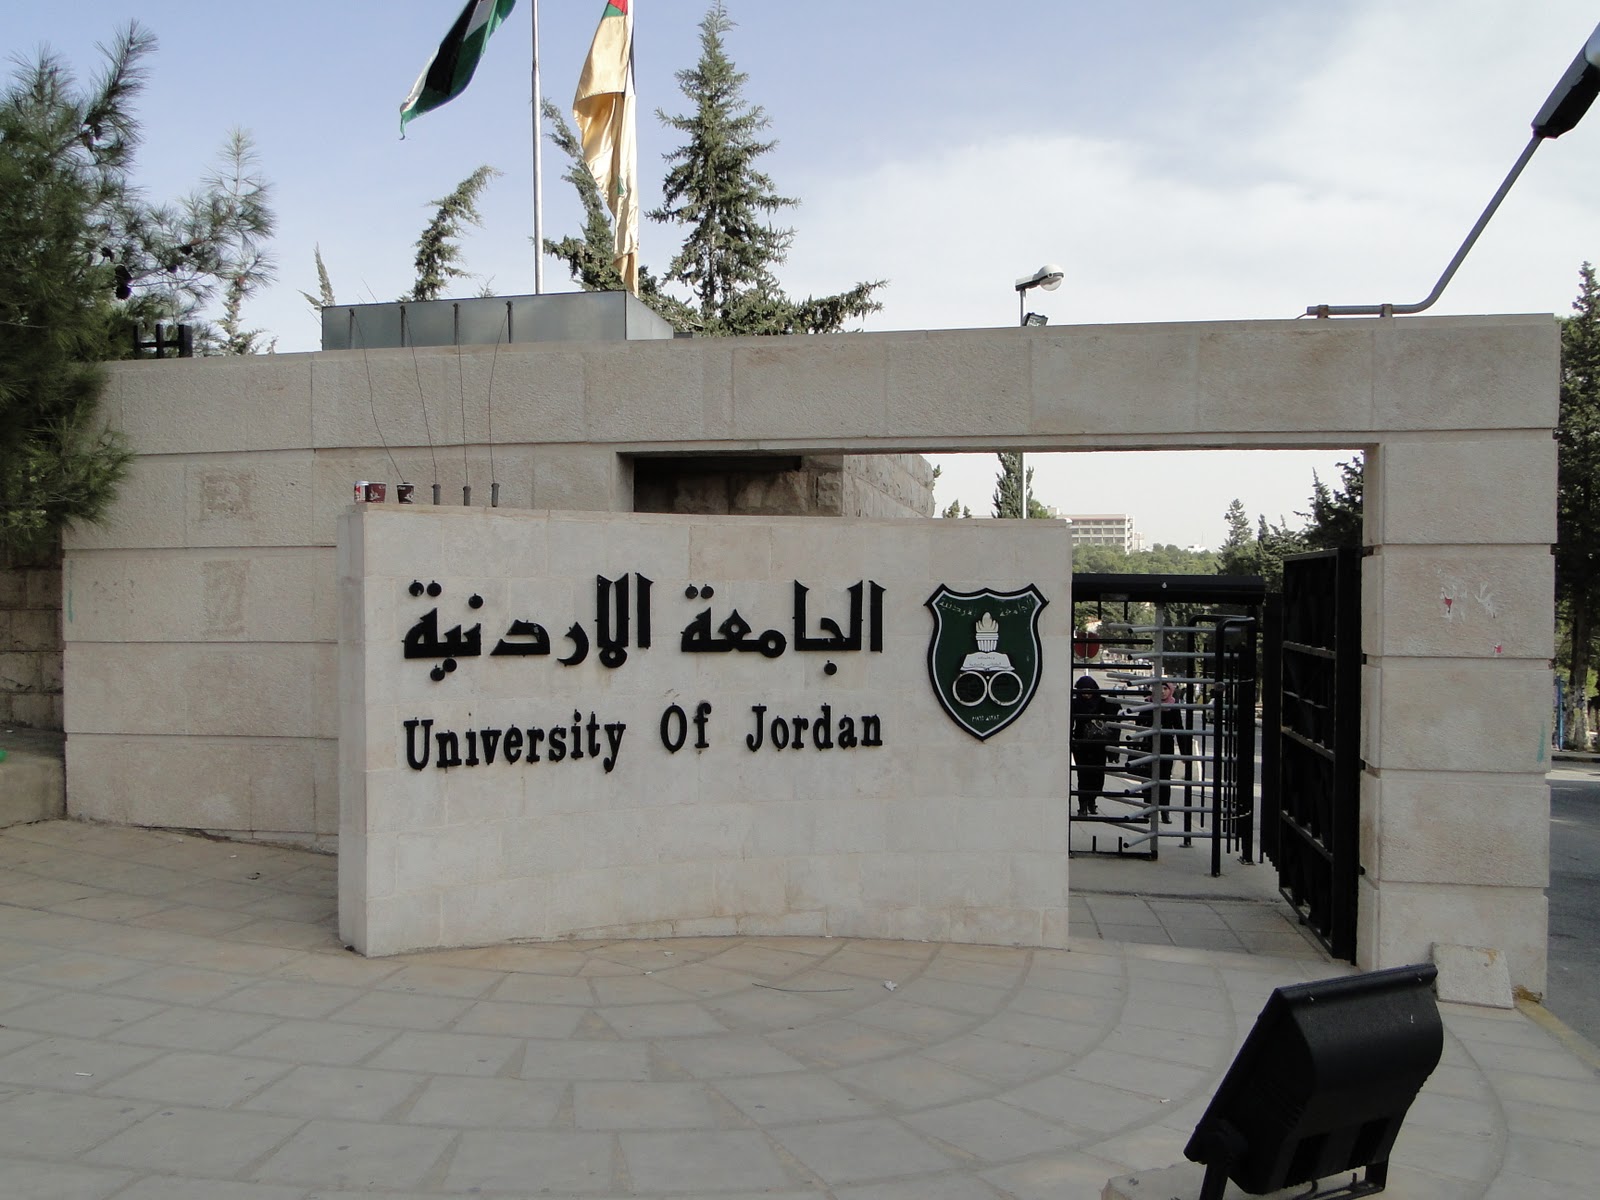 تعطيل طلبة "الأردنية" أيام الخميس خلال الفصل الصيفي المقبل